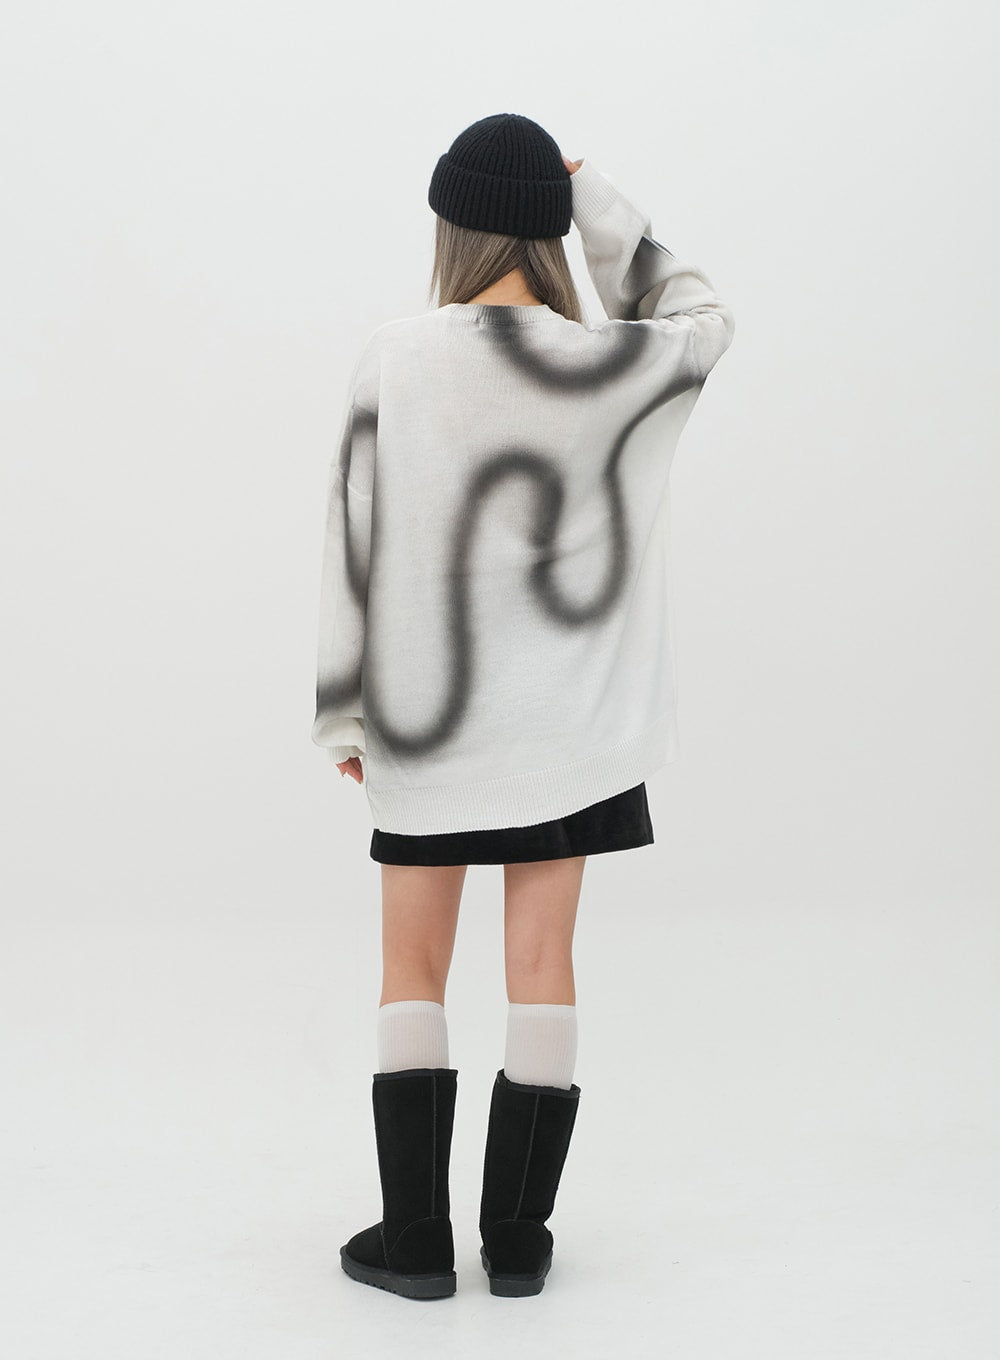 Graffiti Print Knit Pullover